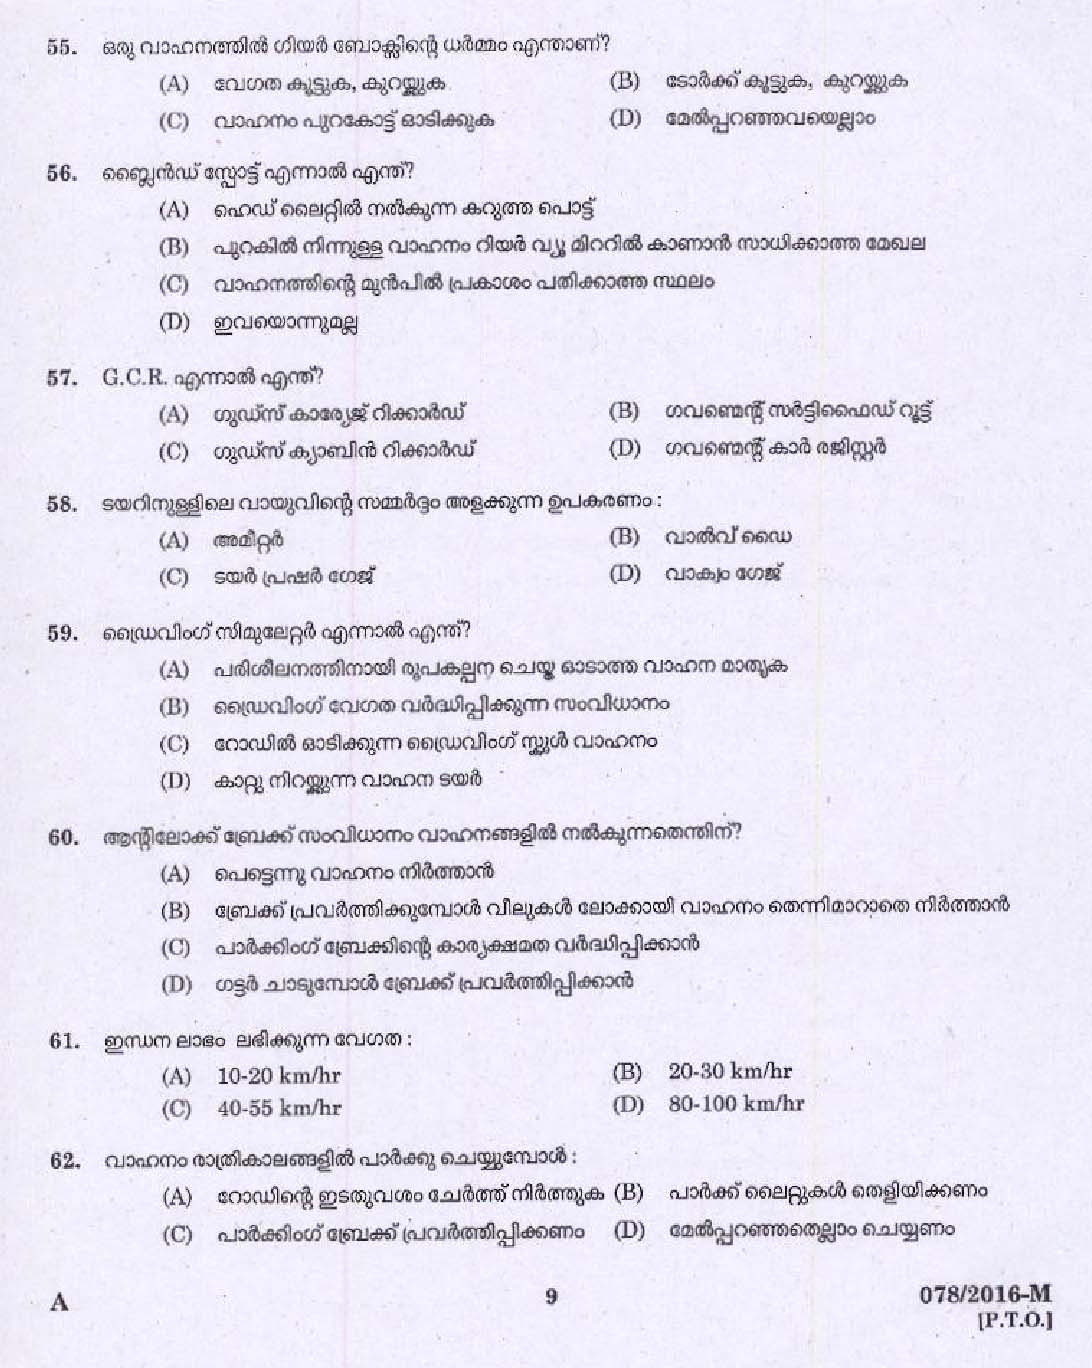 Kerala PSC Driver Grade II Exam 2016 Question Paper Code 0782016 M 7